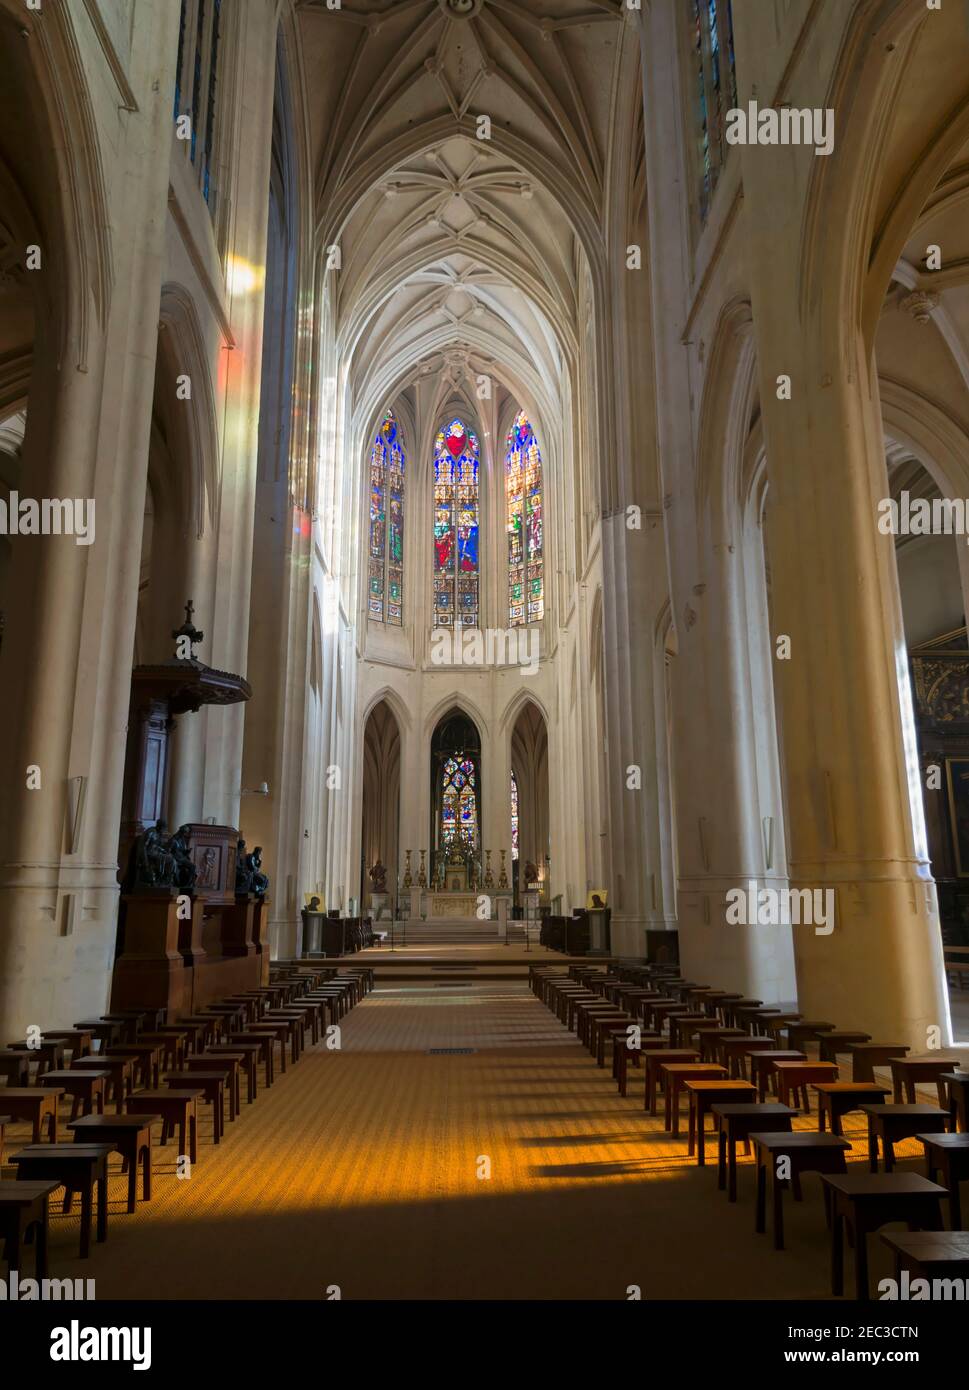 Chiesa di St Gervais St Protais, Parigi. Interno della chiesa del 17 ° secolo. La chiesa è attualmente sede della Fraternità monastica di Gerusalemme Foto Stock